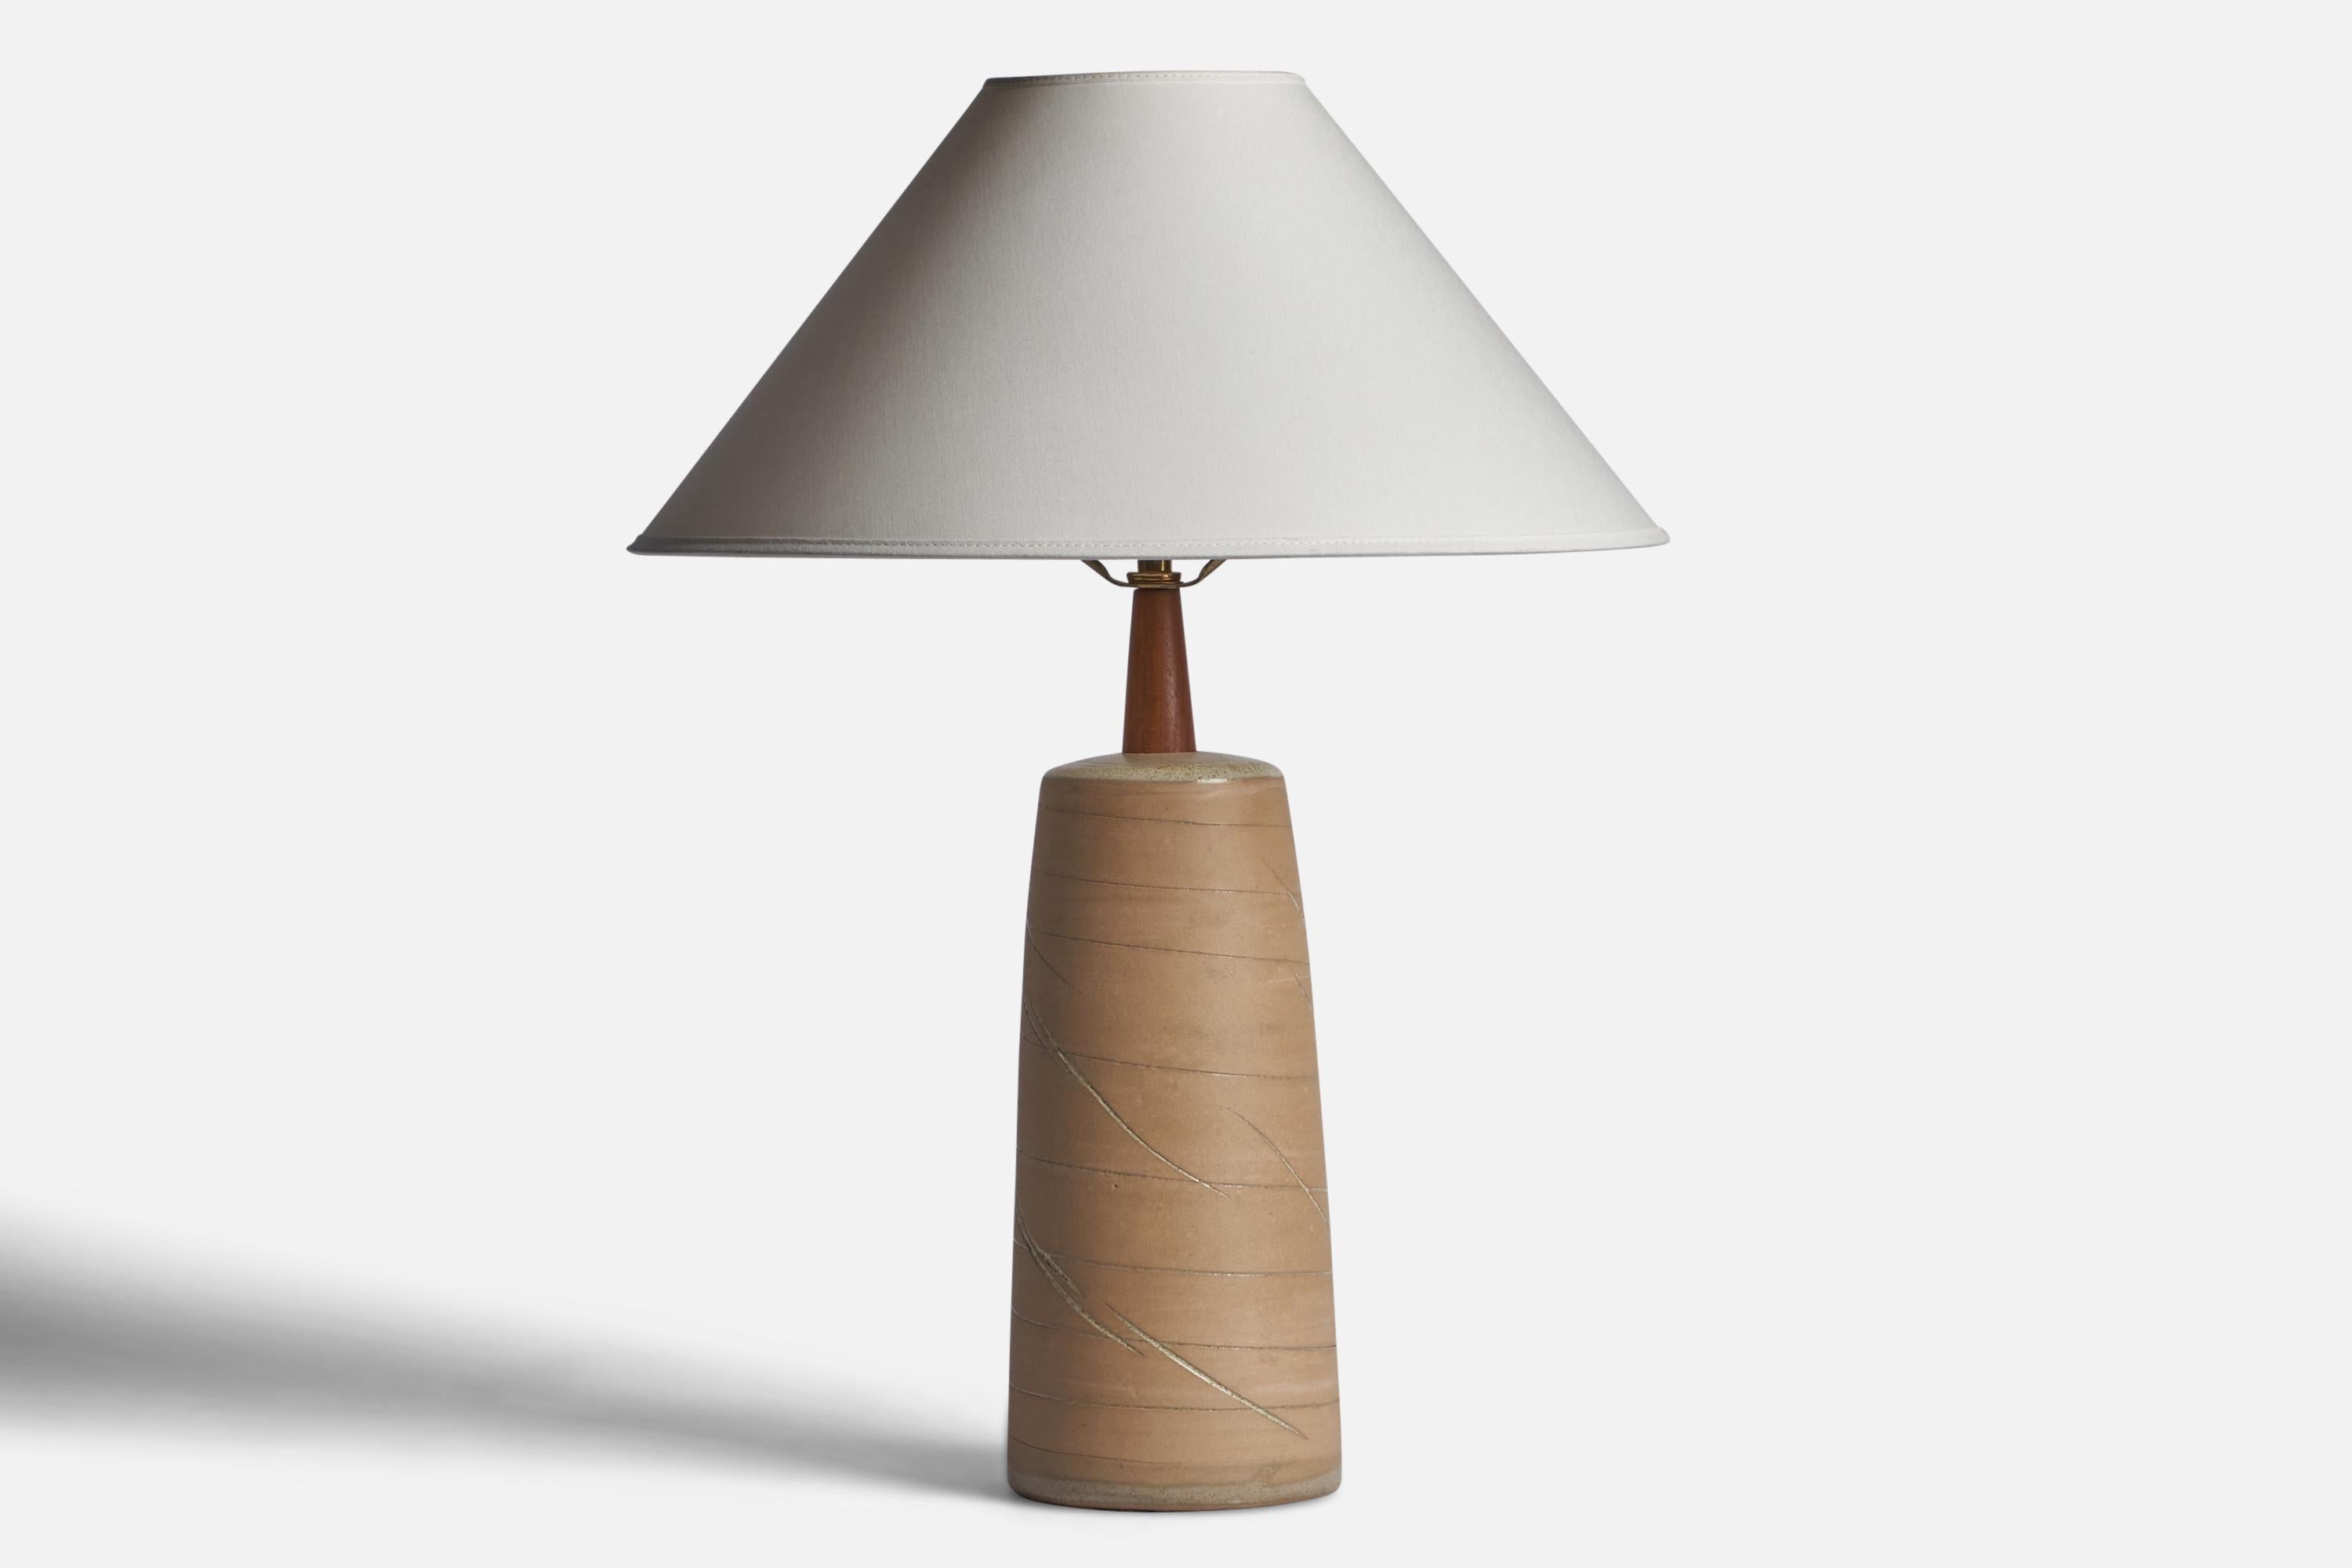 Lampe de table en céramique émaillée beige et en noyer, conçue par Jane & Gordon Martz et produite par Marshall Studios, États-Unis, années 1960.

Dimensions de la lampe (pouces) : 16.95